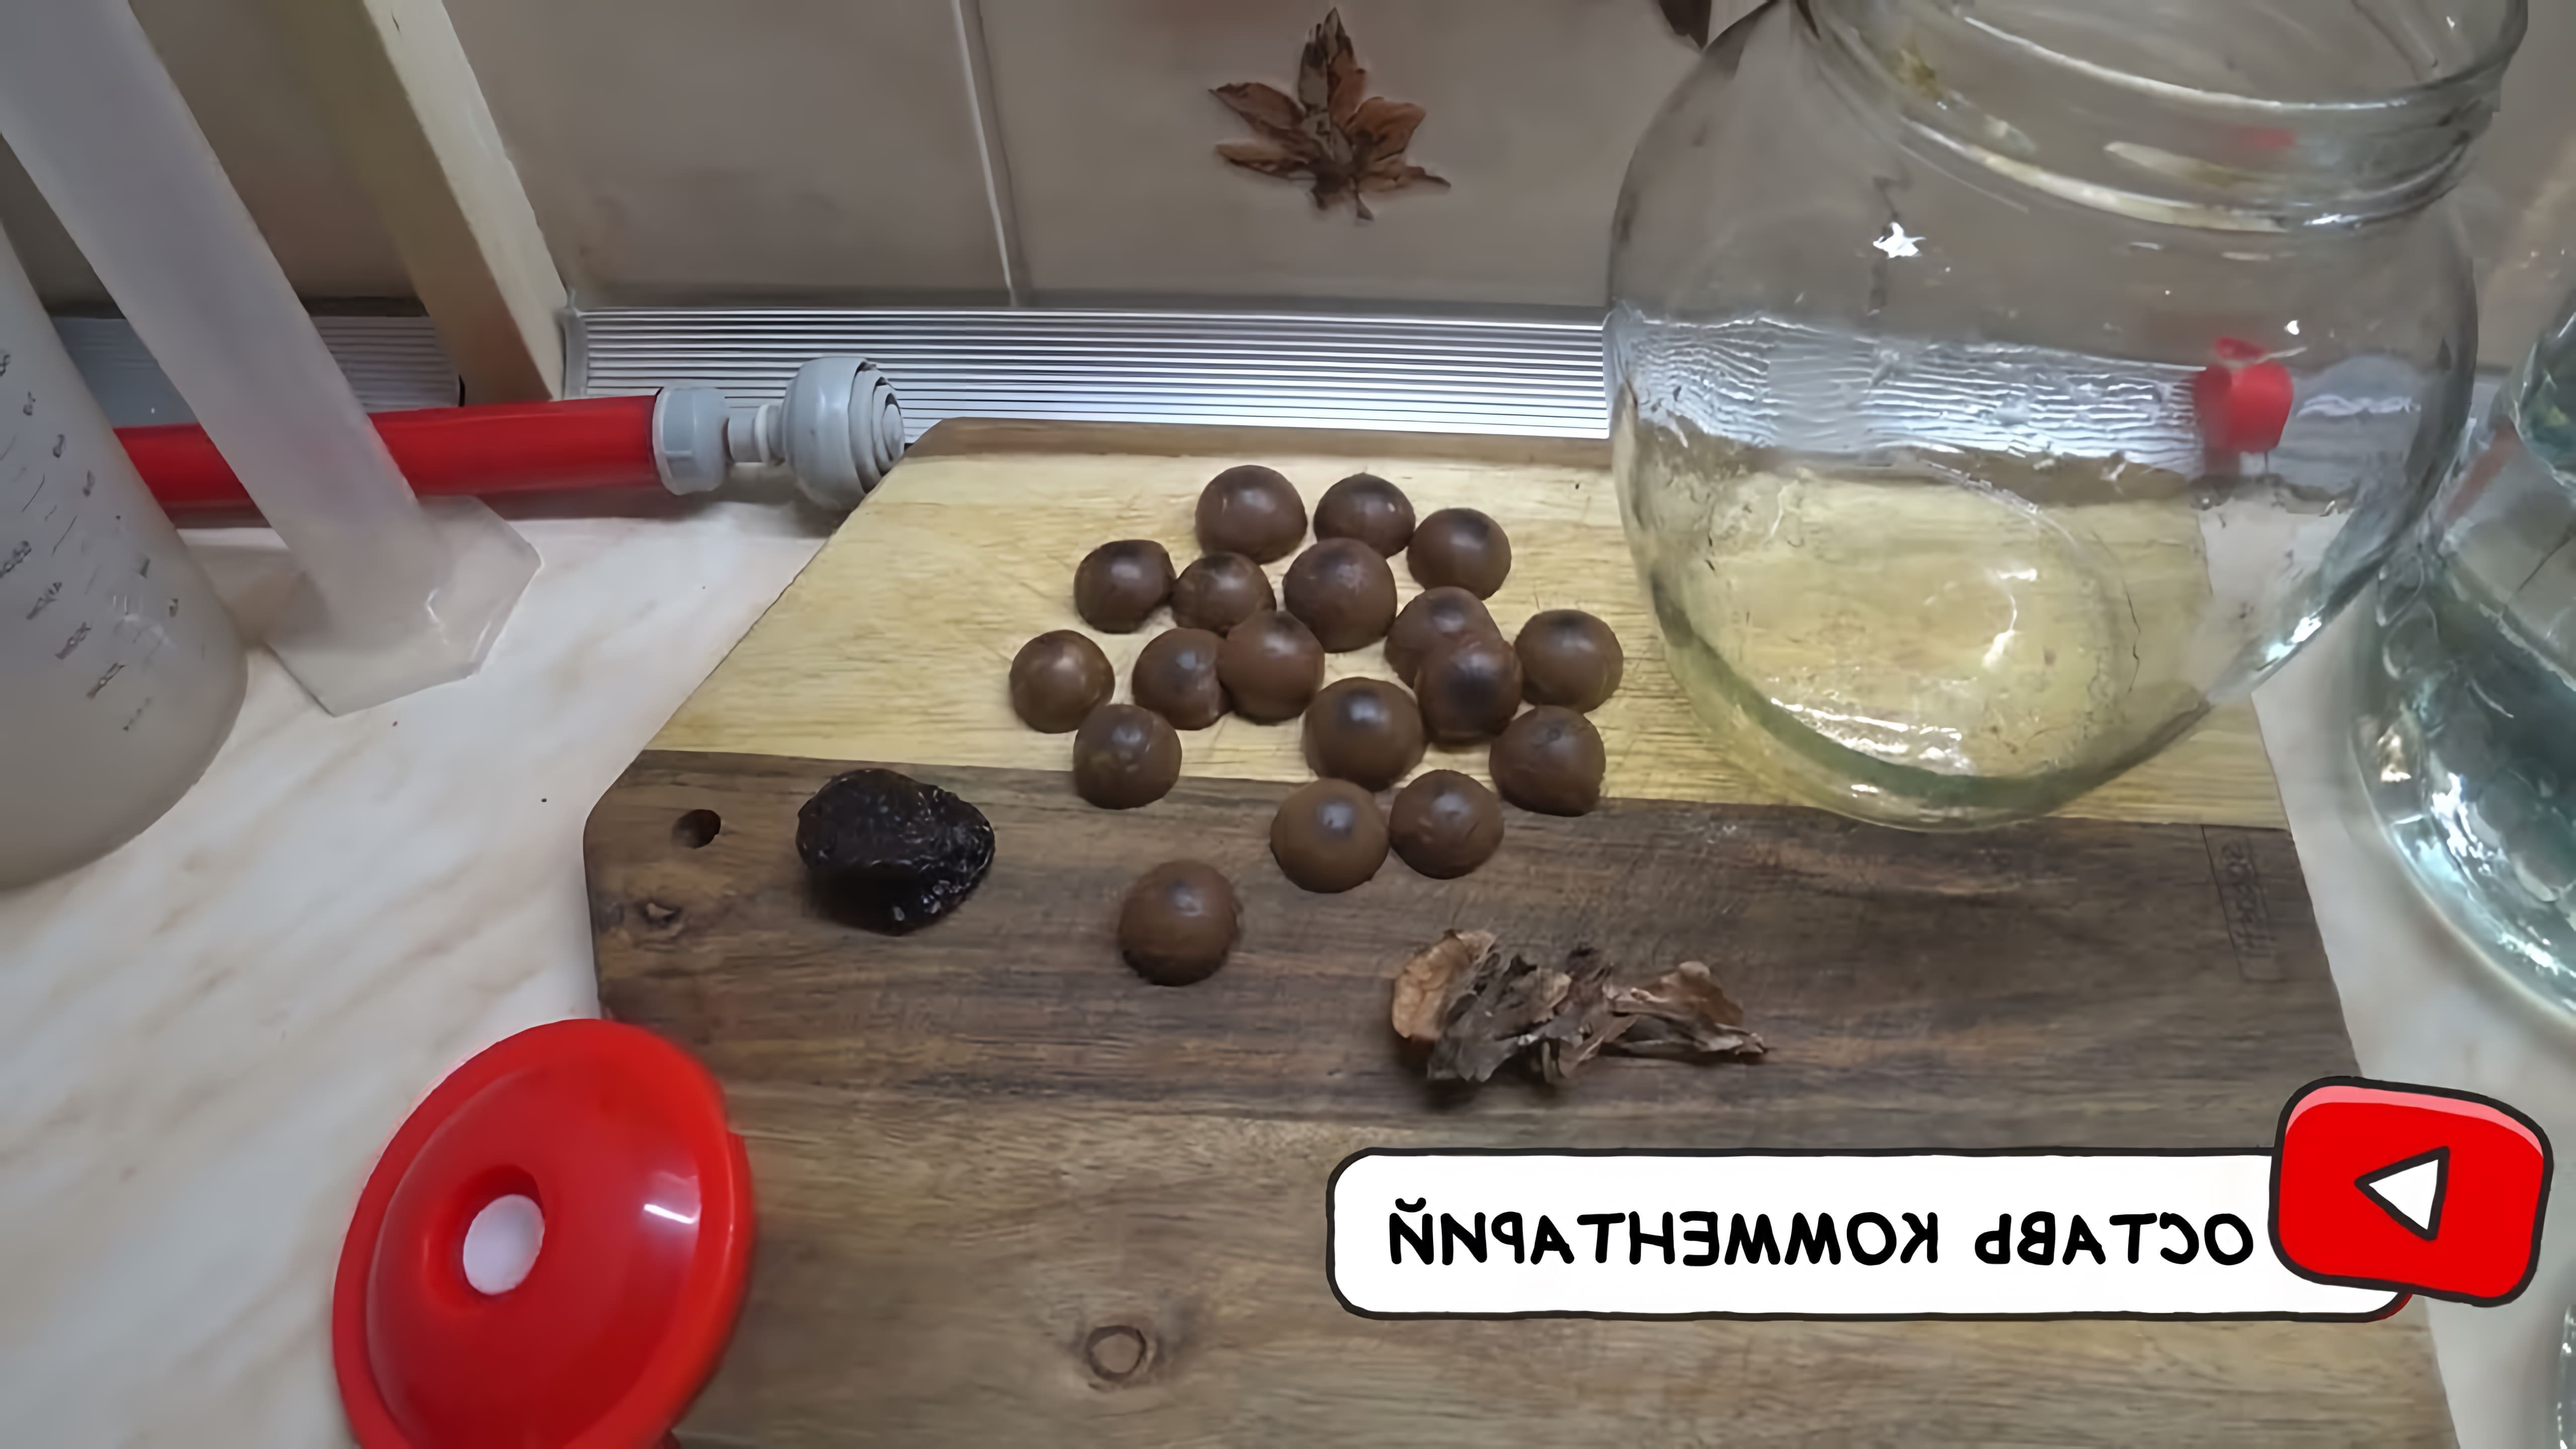 В этом видео демонстрируется процесс приготовления настойки "Макадамия" с использованием скорлупы ореха макадамии